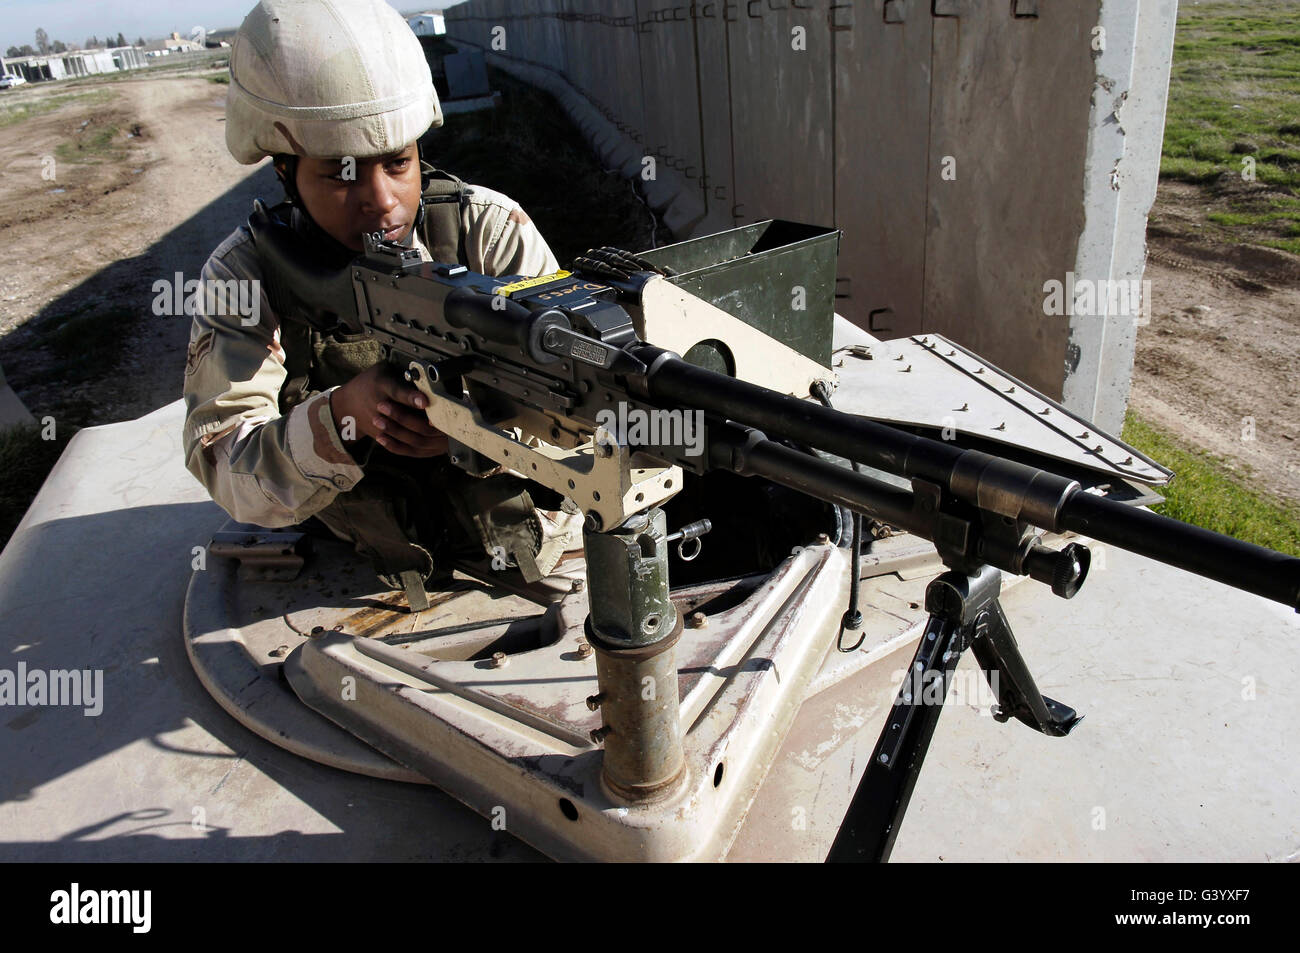 U.S. Air Force Airman aims a M240B machine gun. Stock Photo